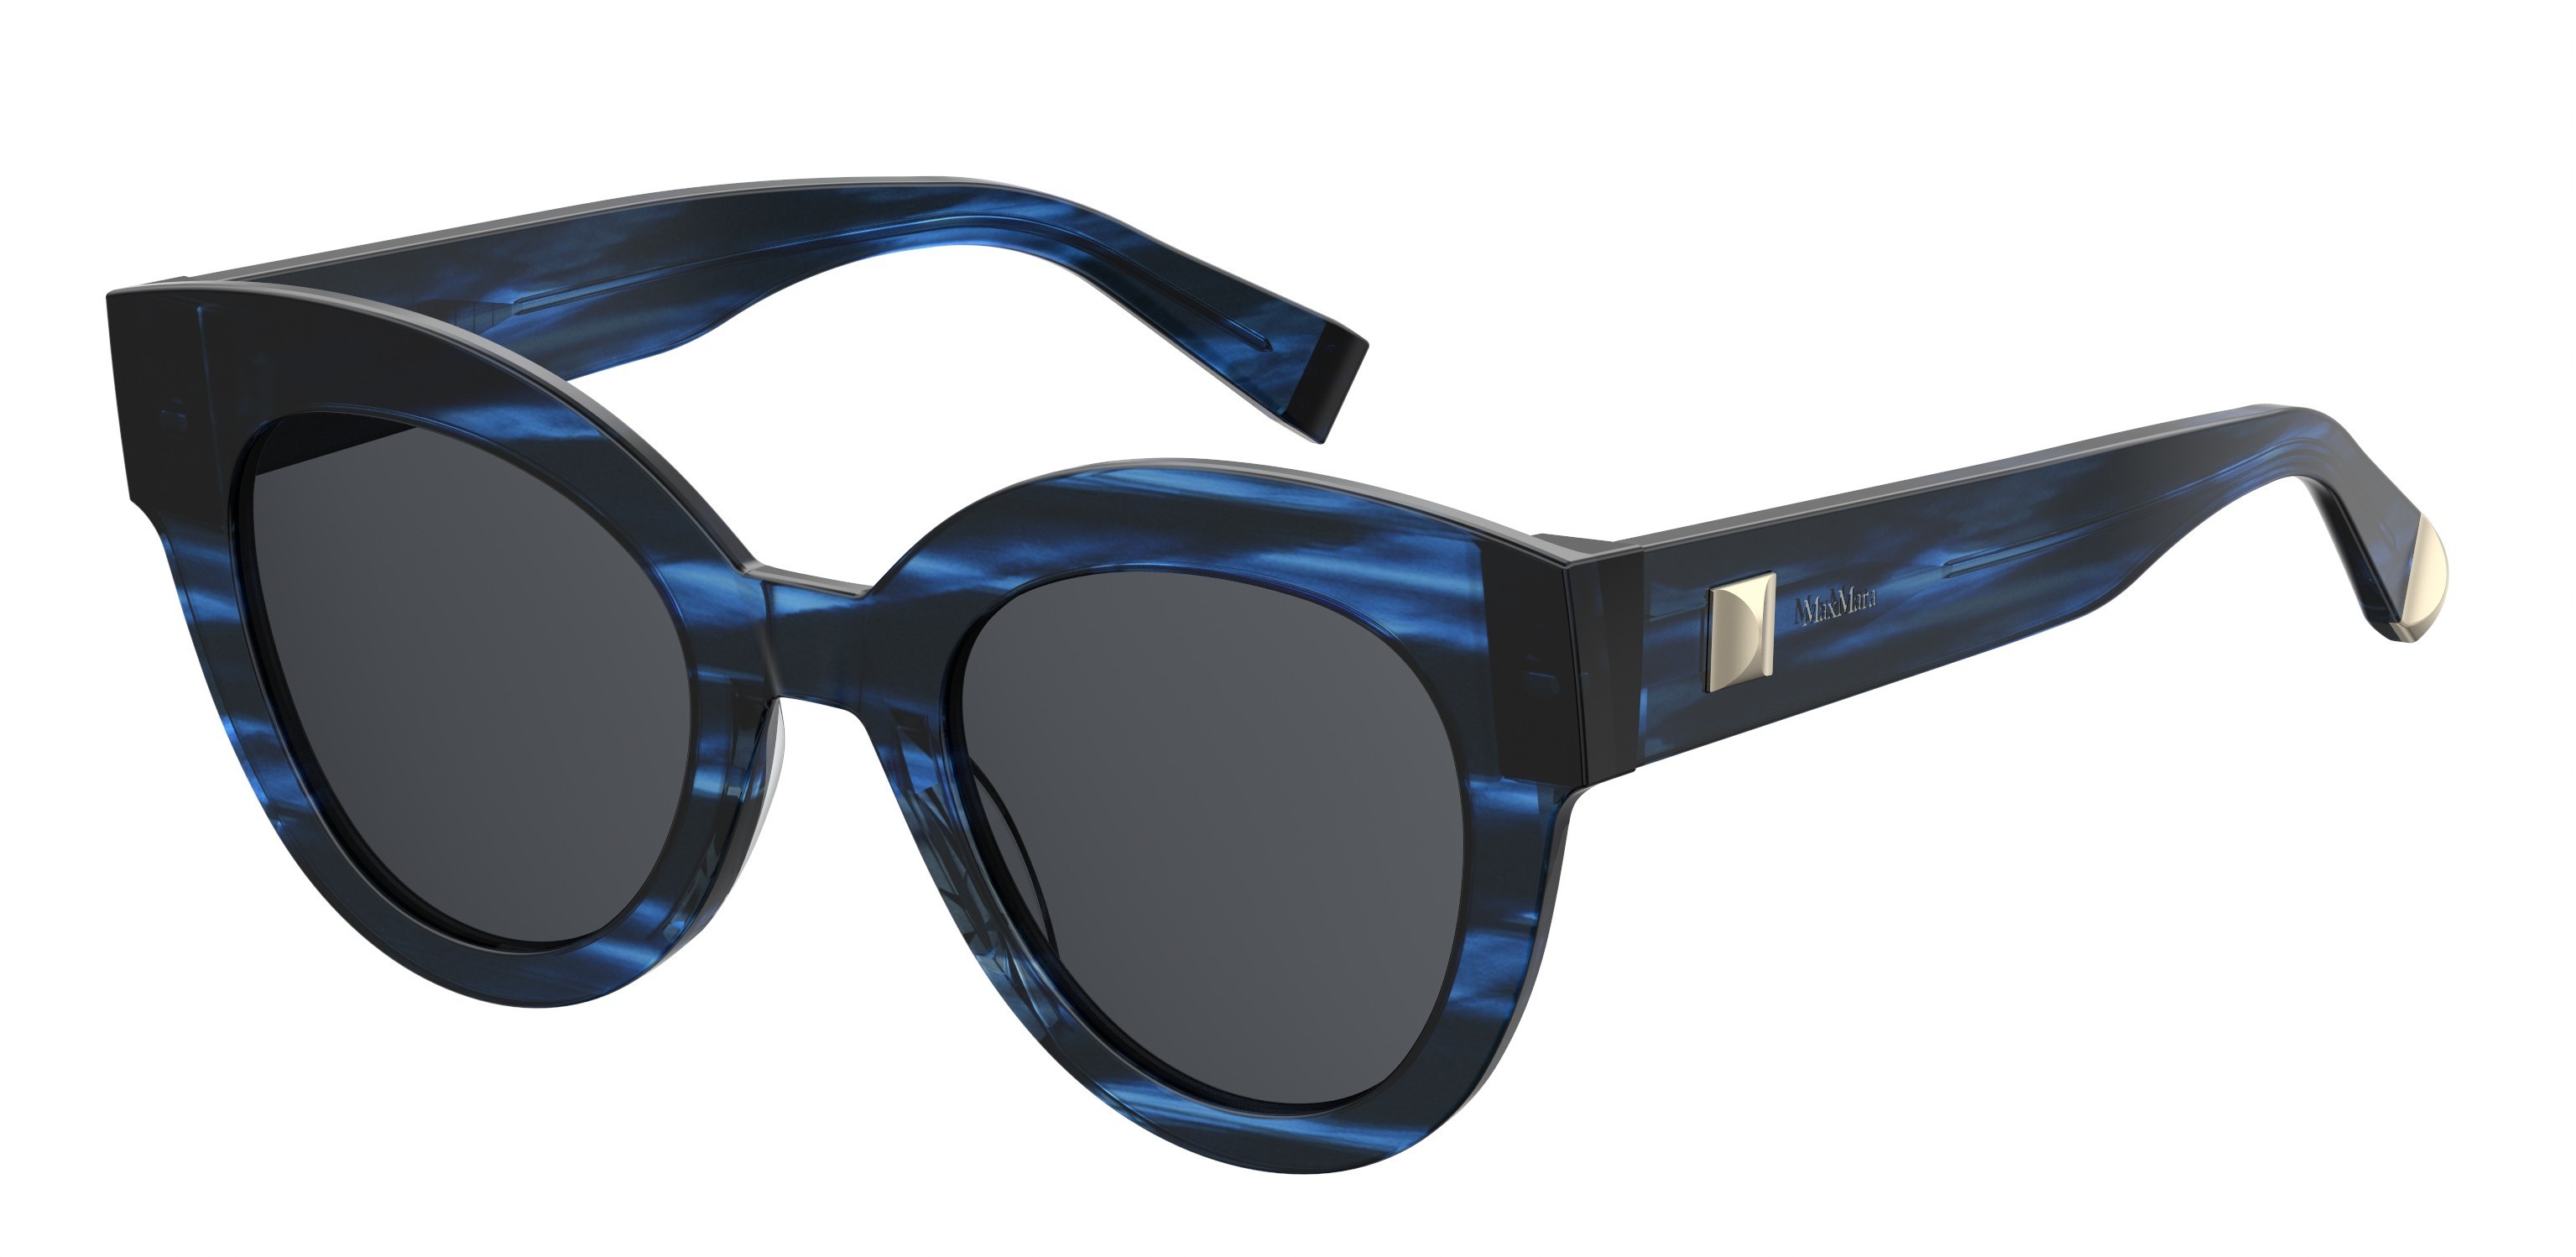 Η νέα συλλογή γυαλιών Max Mara είναι αυτό που θες για το καλοκαίρι σου